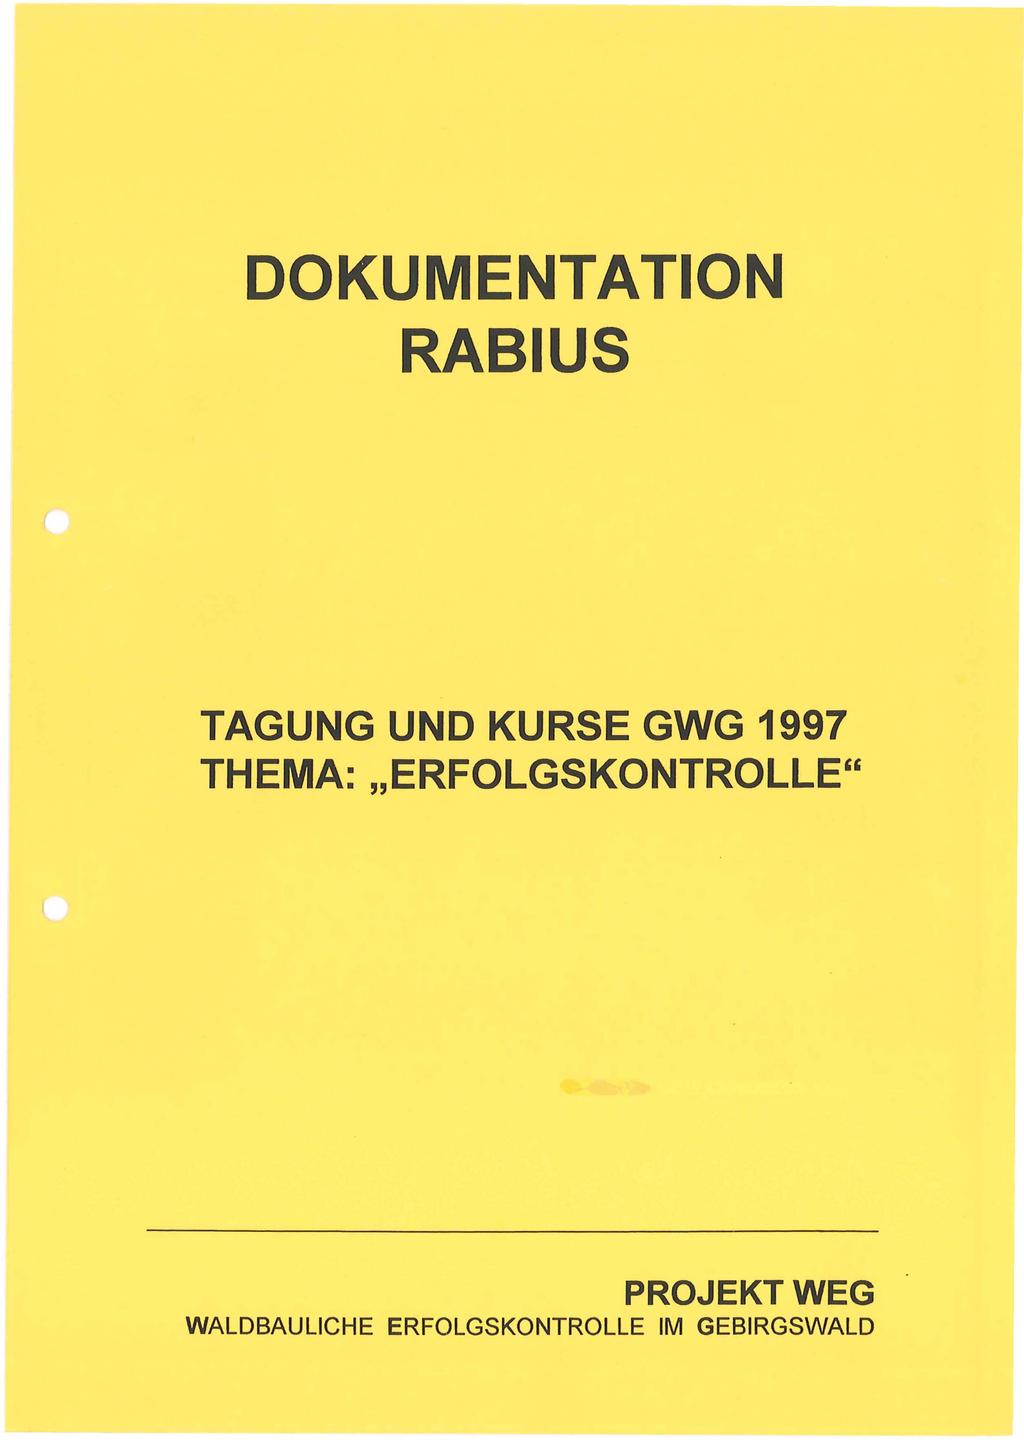 DOKUMENTATION RABIUS TAGUNG UND KURSE GWG 1997 THEMA: